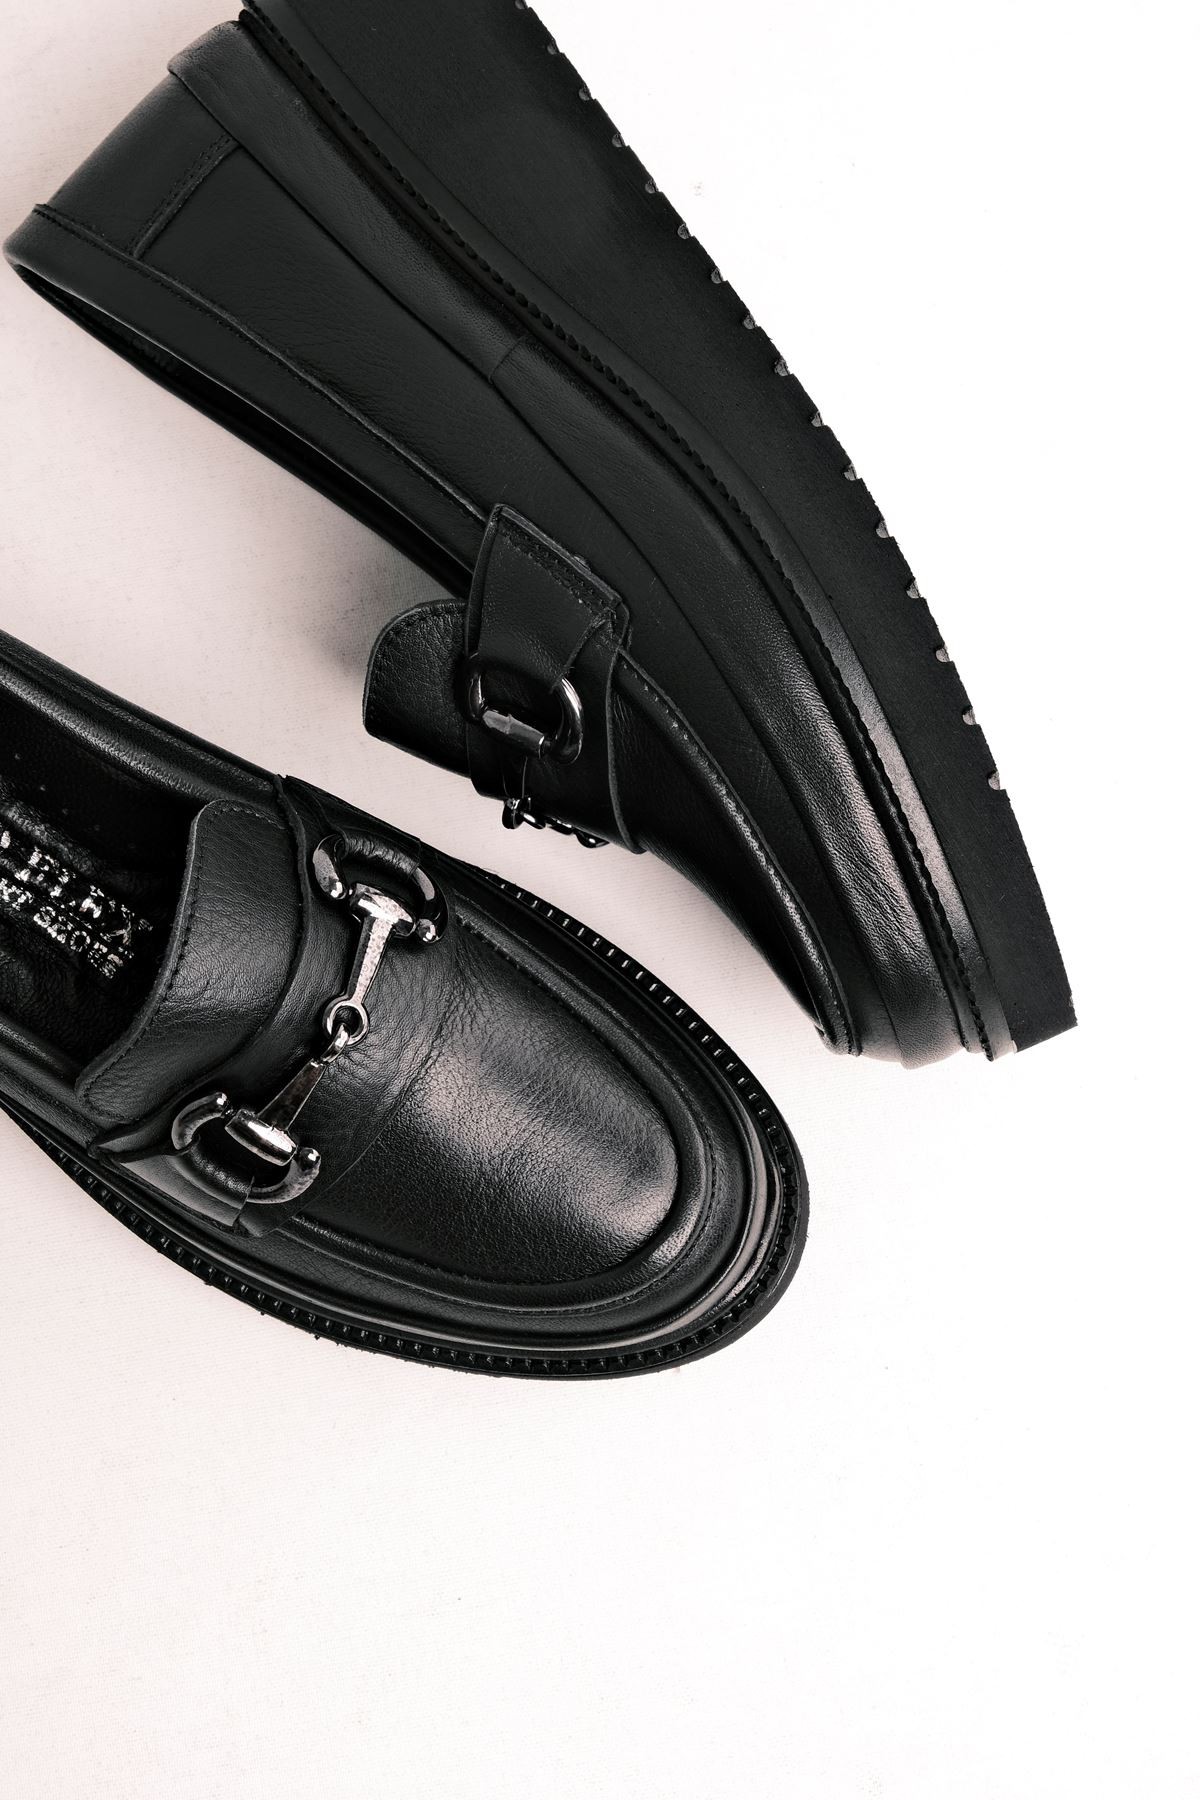 Always Kadın Günlük Hakiki Deri Loafer Tokalı Ayakkabı (4 cm ) - Siyah